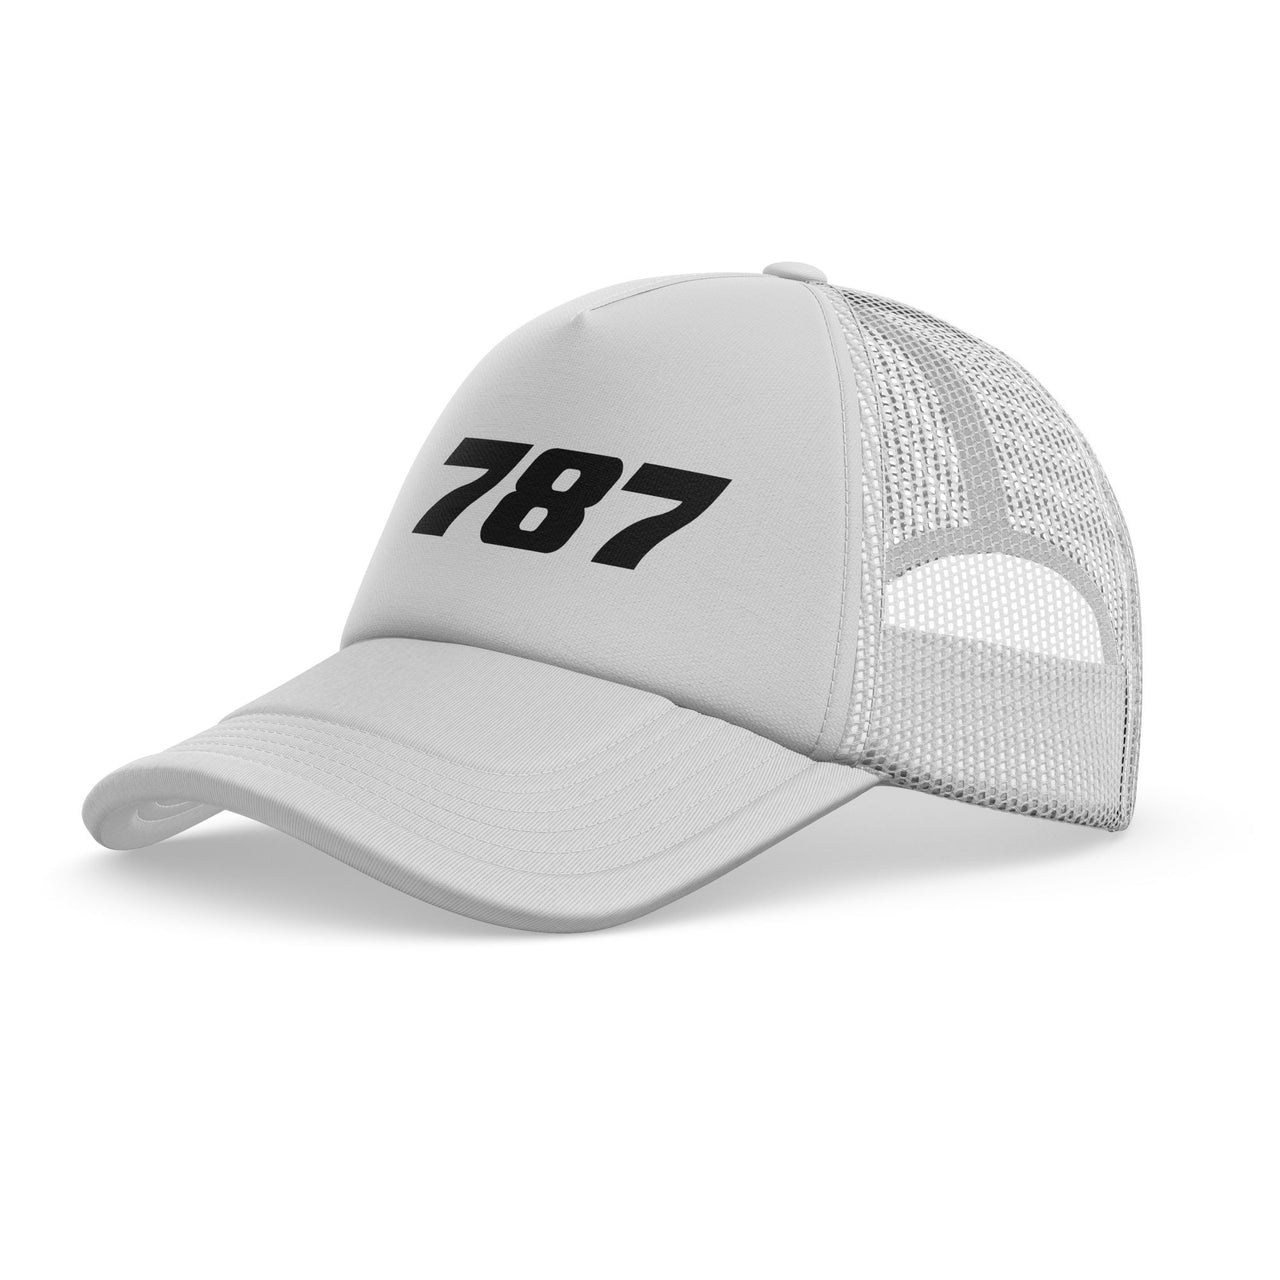 787 Flat Text Designed Trucker Caps & Hats